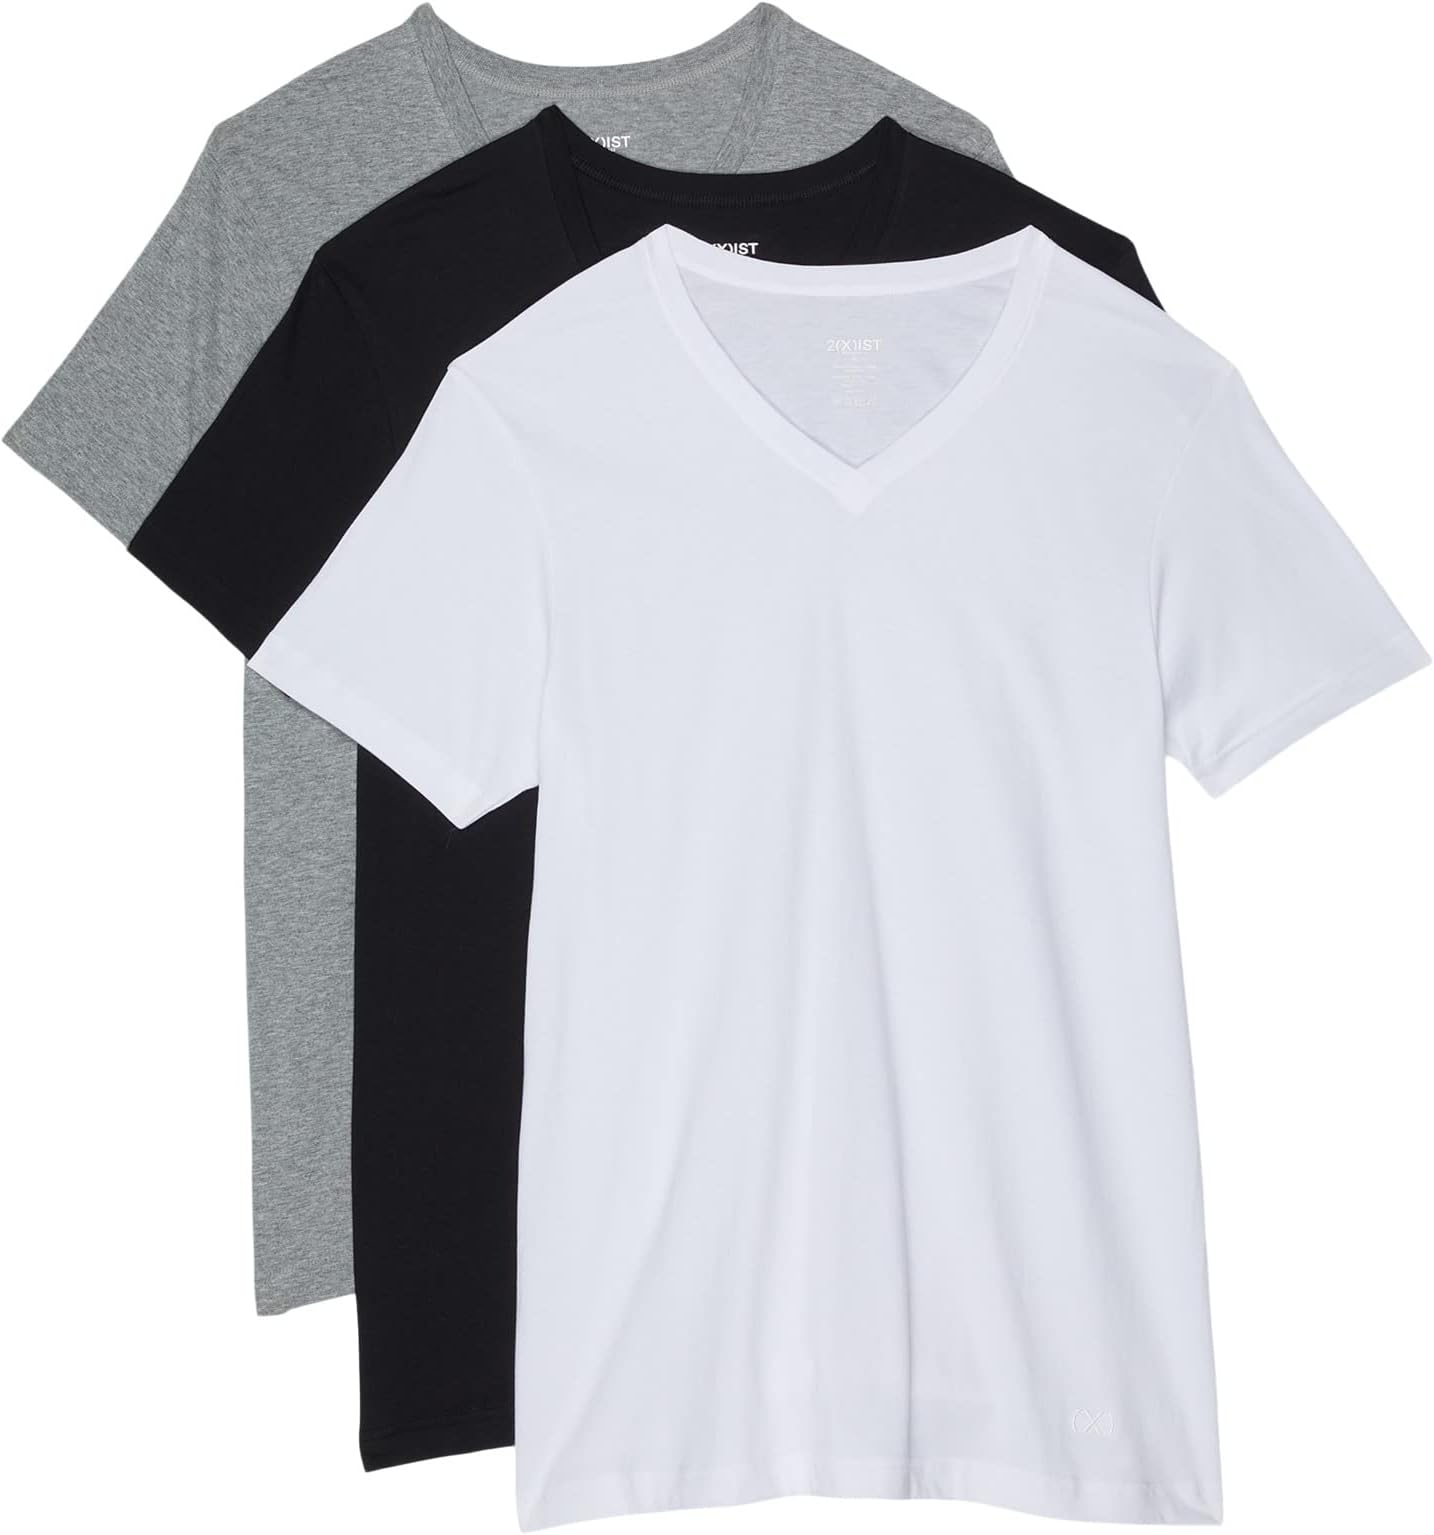 Комплект из 3 трикотажных футболок ESSENTIAL с V-образным вырезом 2(X)IST, цвет White/Black/Heather Grey